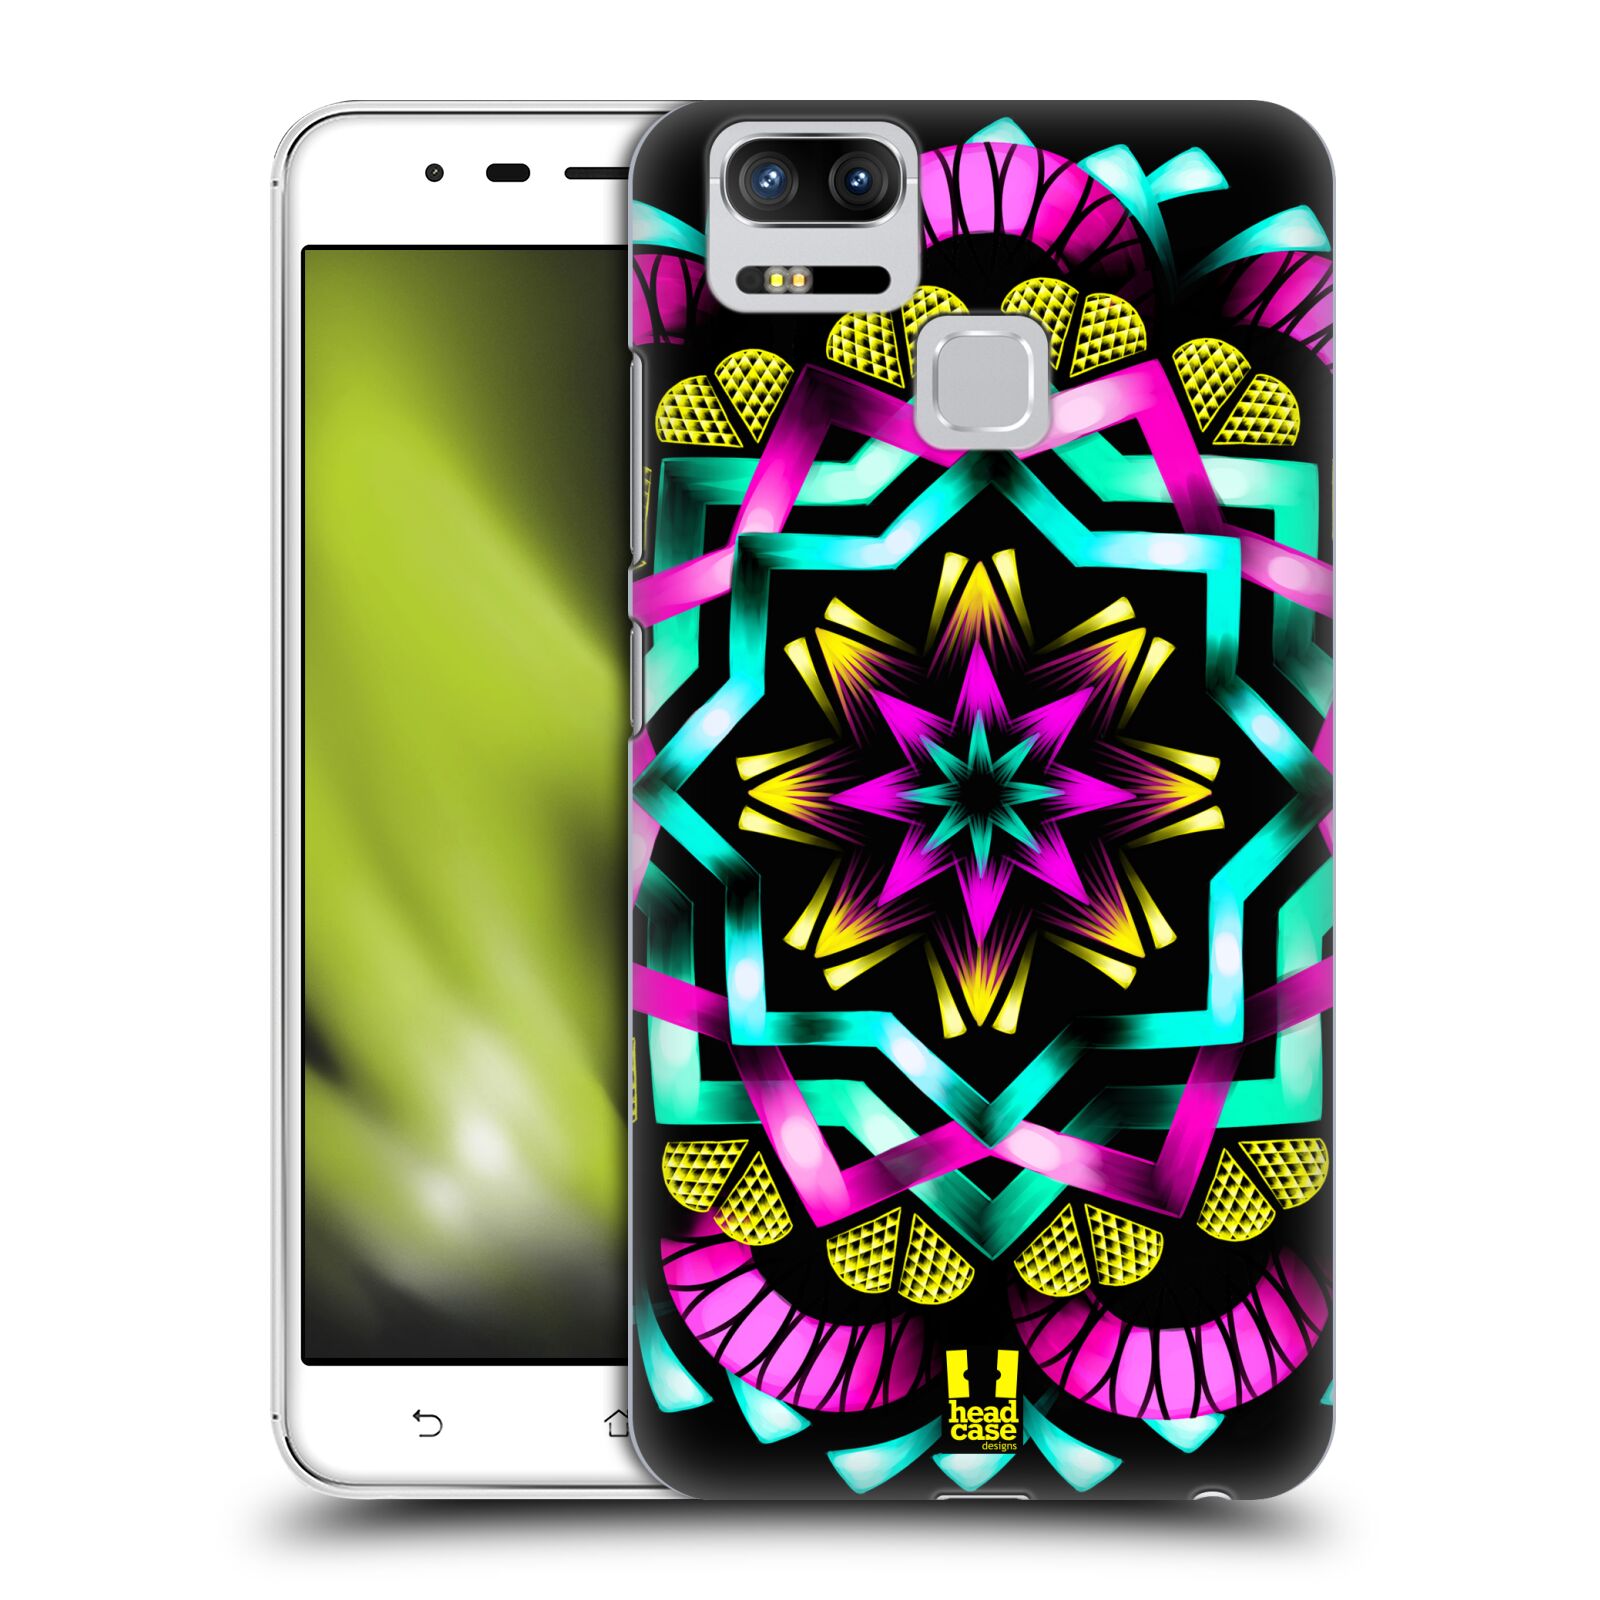 HEAD CASE plastový obal na mobil Asus Zenfone 3 Zoom ZE553KL vzor Indie Mandala kaleidoskop barevný vzor SLUNCE